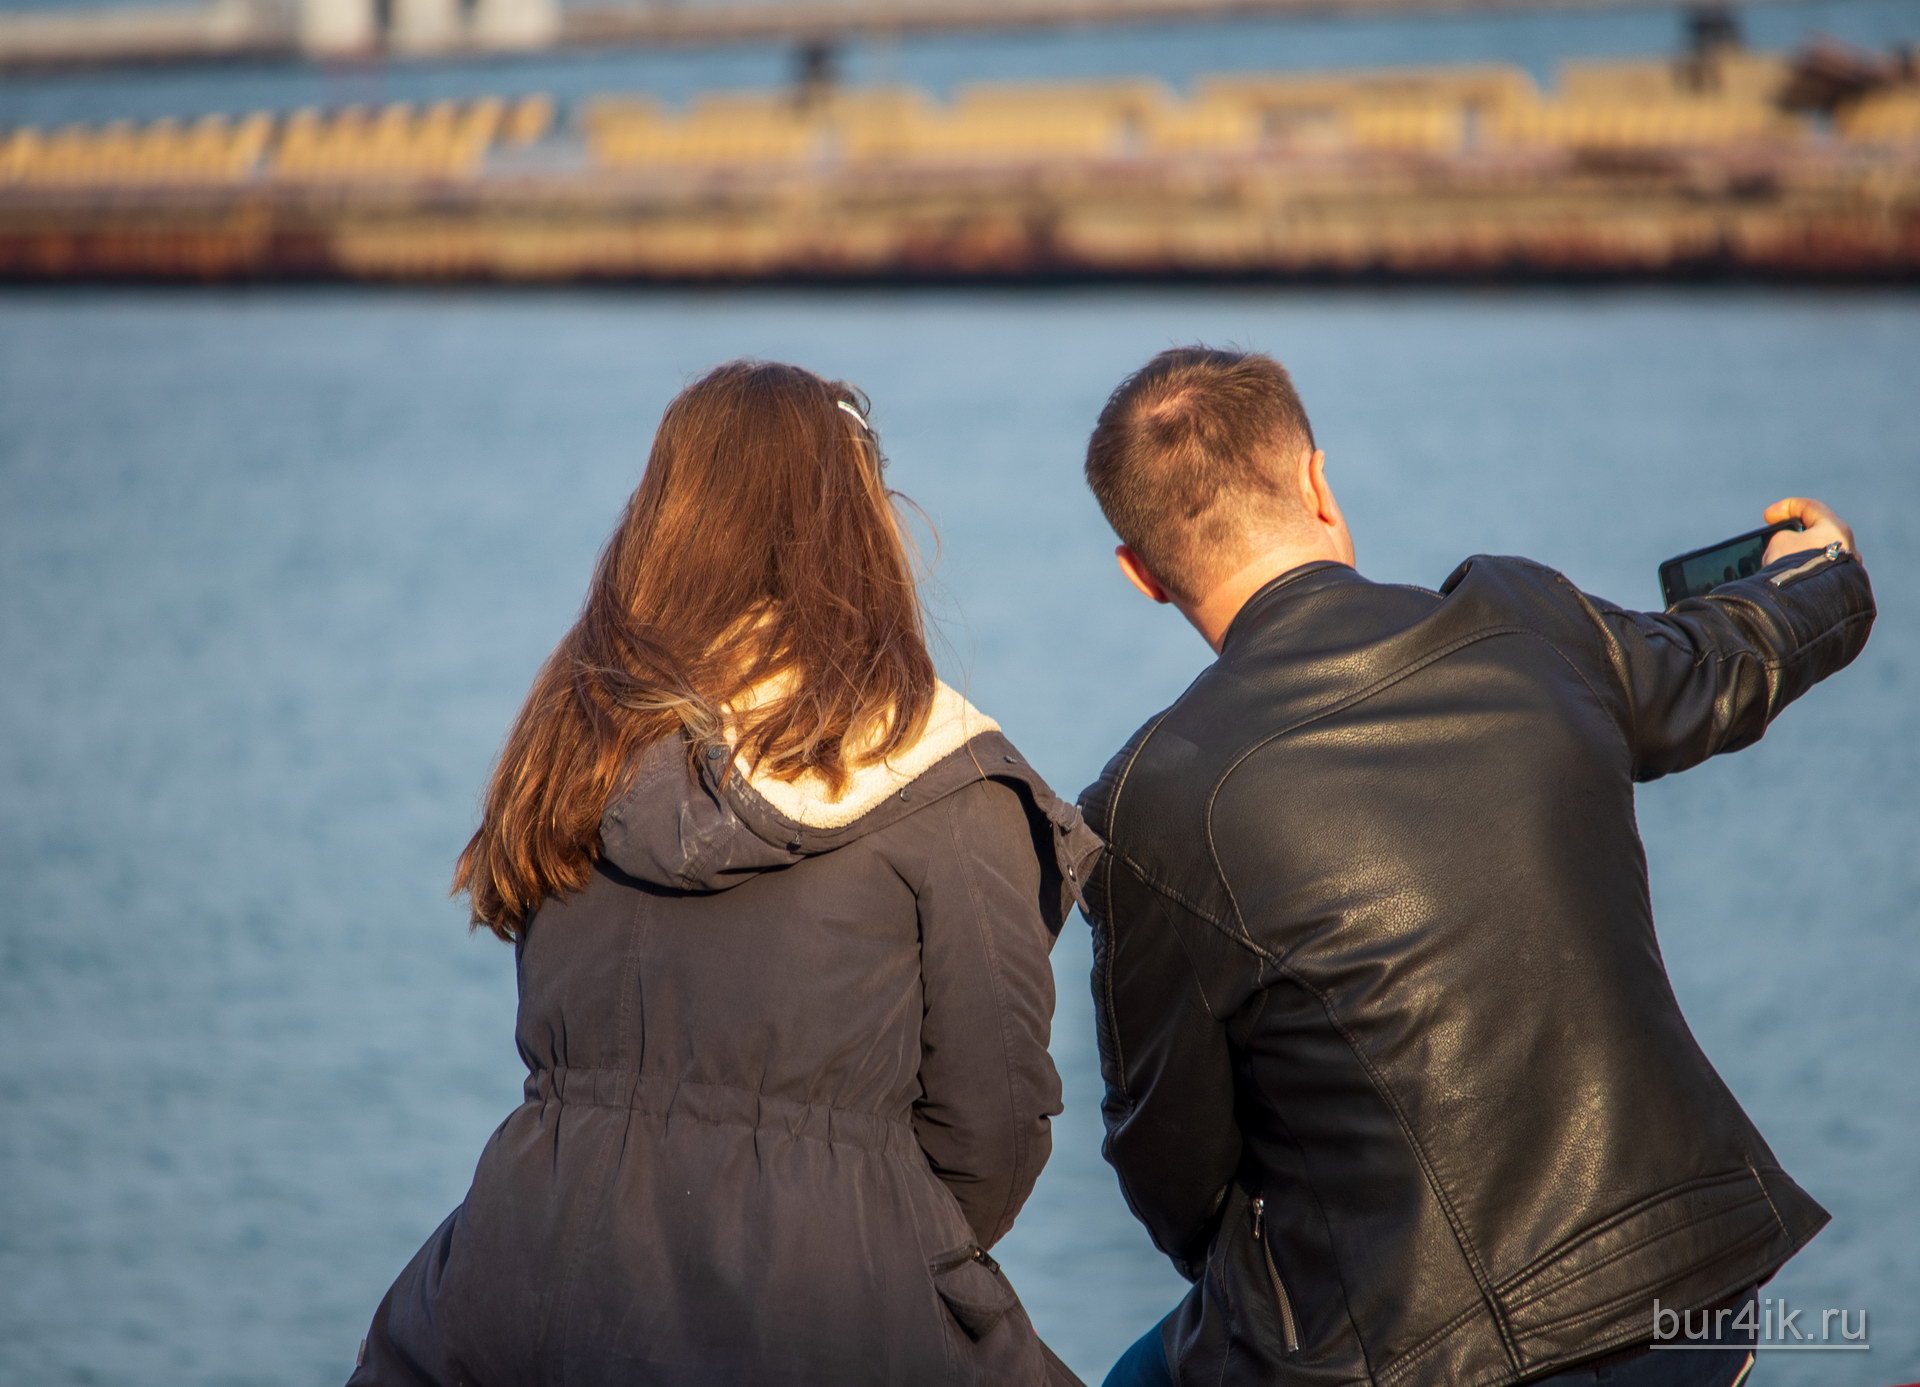 Парень и девушка сидя на скамейке делают серфи в порту города Одесса 2